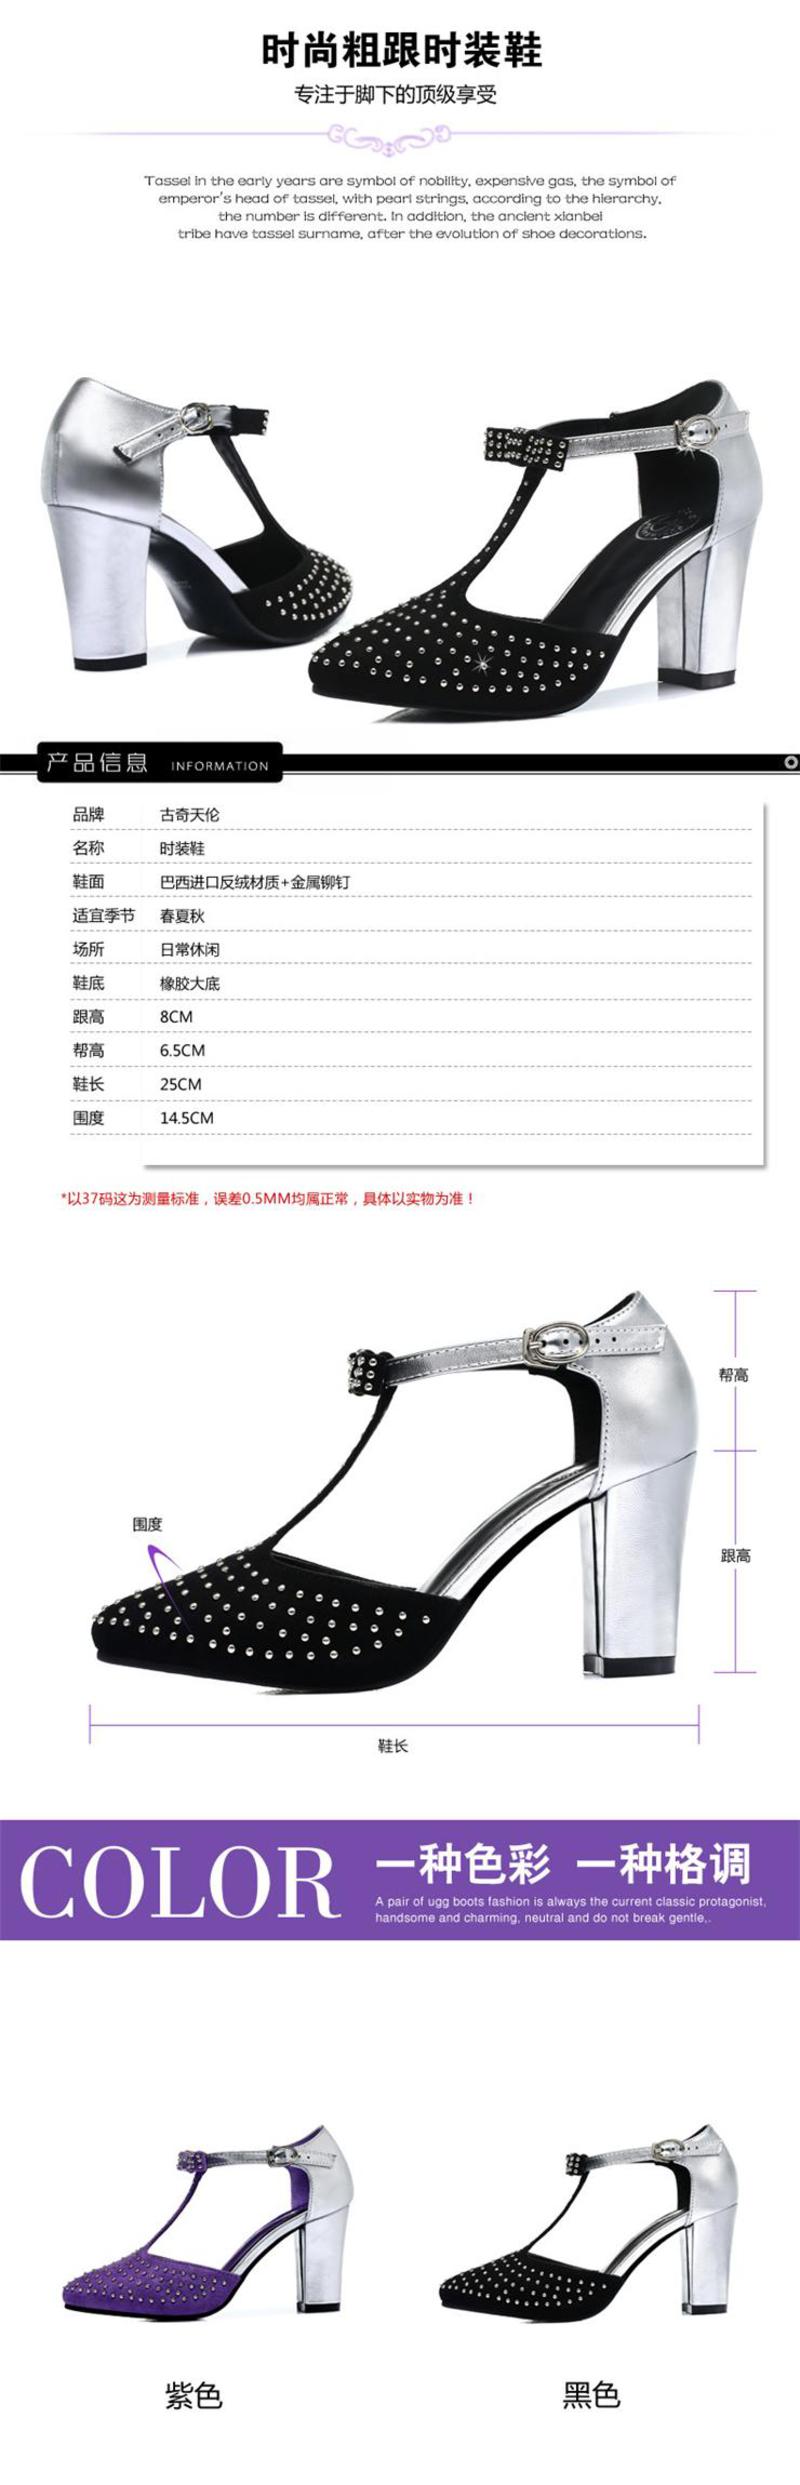 【天天特价】Guci古奇天伦新款女鞋夏单鞋韩国公主尖头单鞋铆钉中跟平底高跟鞋粗跟时尚女鞋